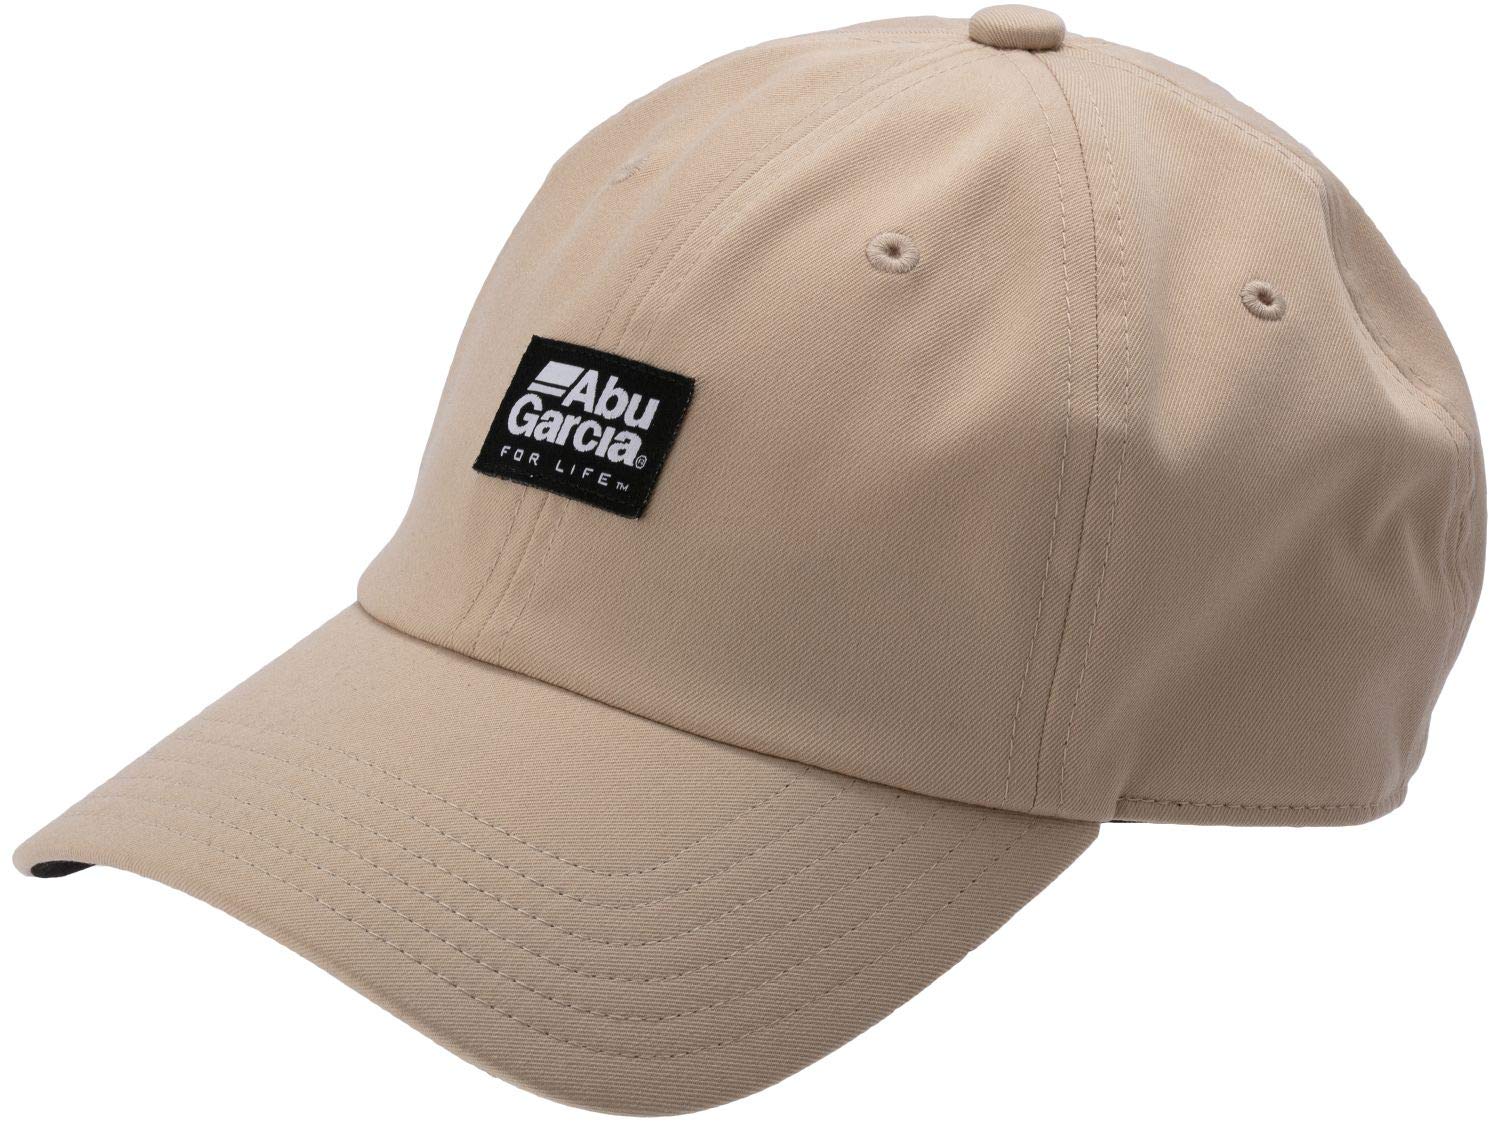 アブガルシア(Abu Garcia) キャップ クイックドライツイルキャップ QUICK DRY TWILL CAP BEIGE Fサイズ 帽子 熱中症対策